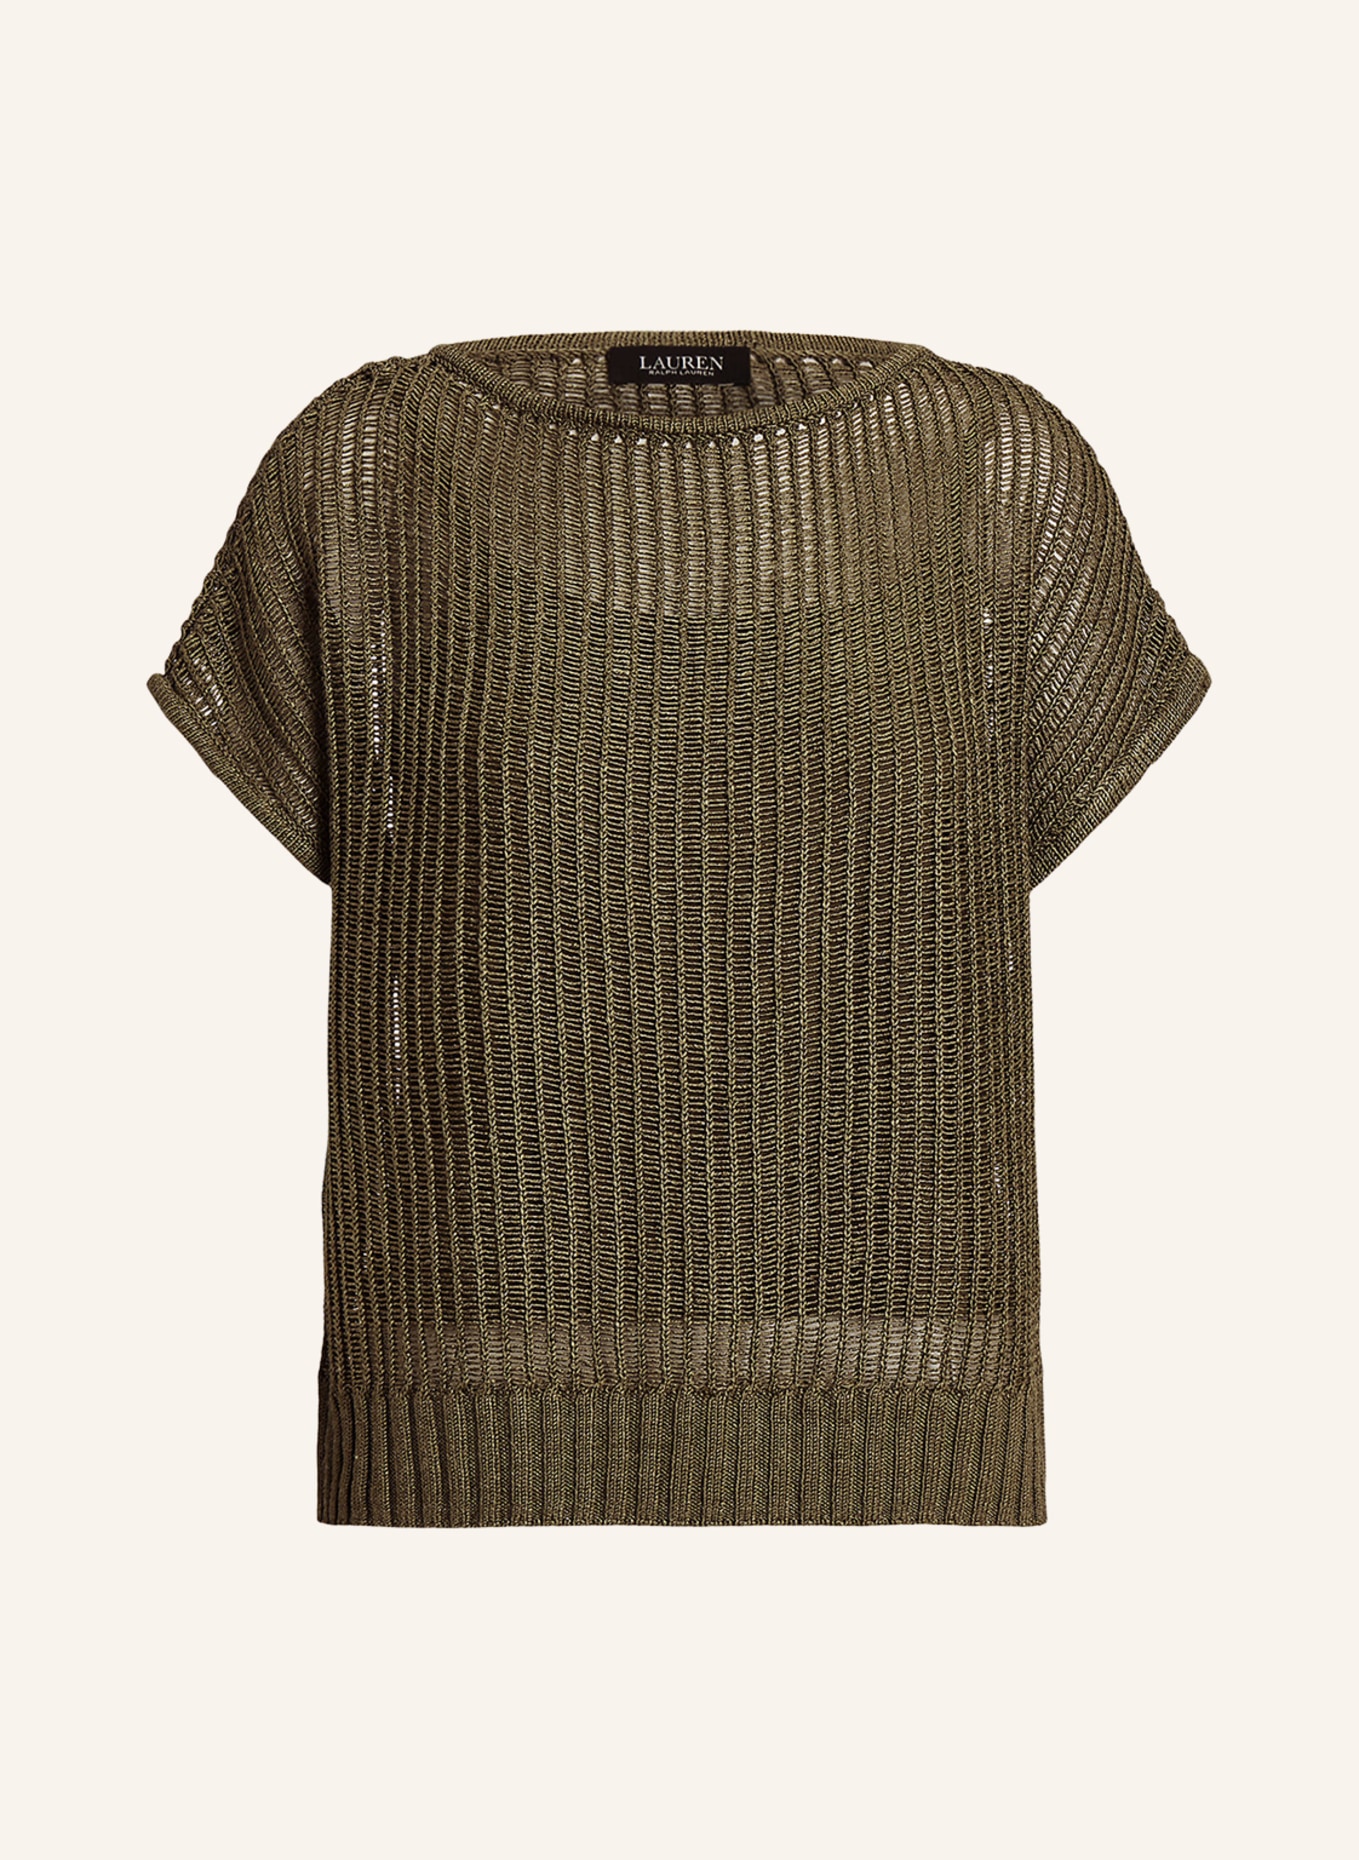 LAUREN RALPH LAUREN Knit shirt, Color: OLIVE (Image 1)